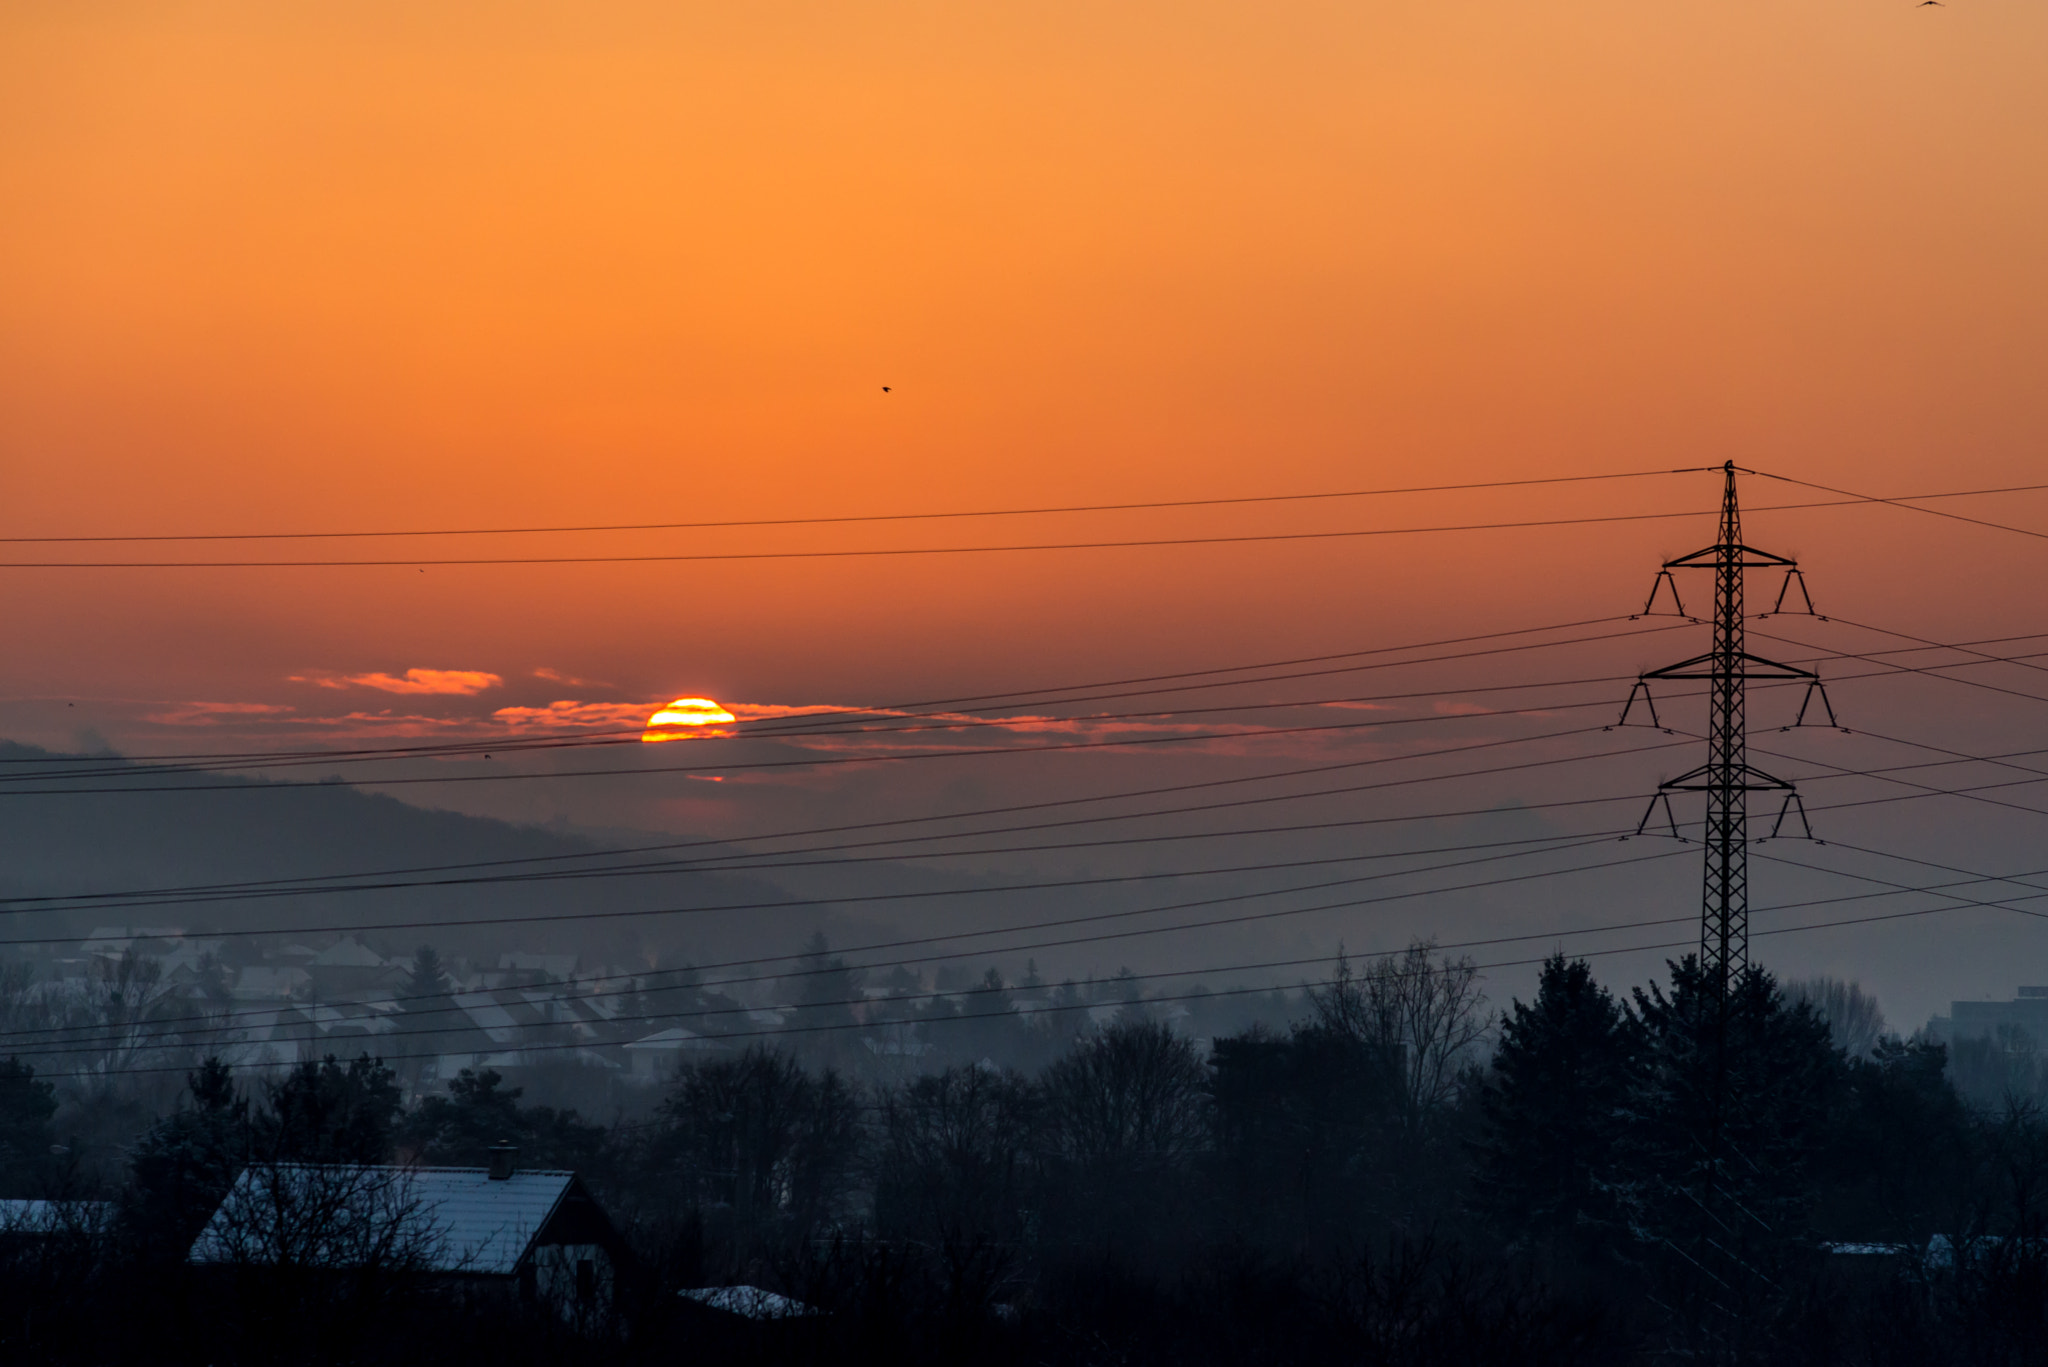 AF Nikkor 180mm f/2.8 IF-ED sample photo. Winter sunrise over bratislava photography